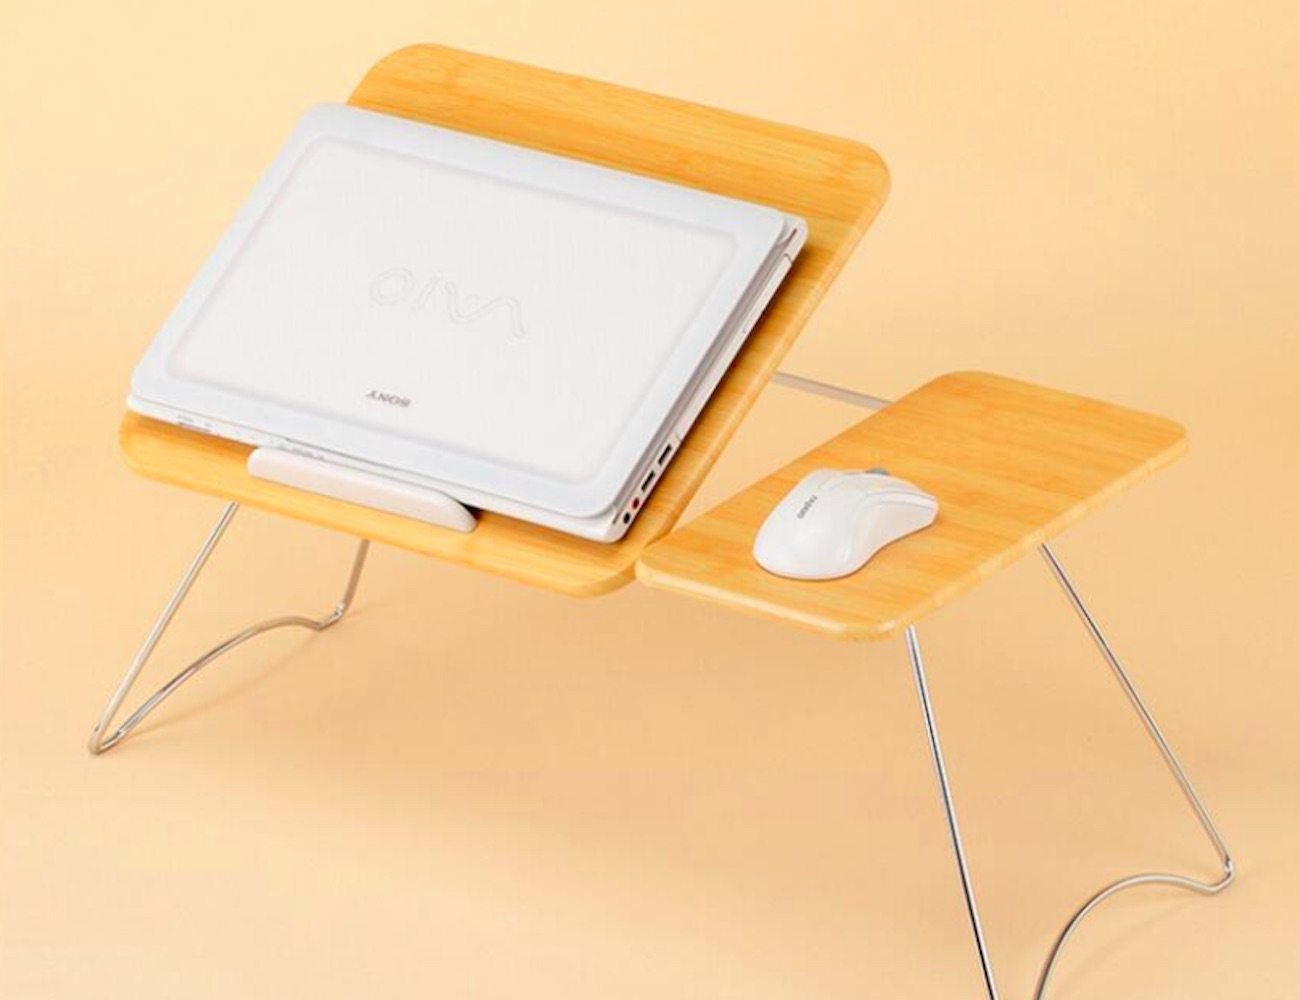 складной столик для ноутбука своими руками